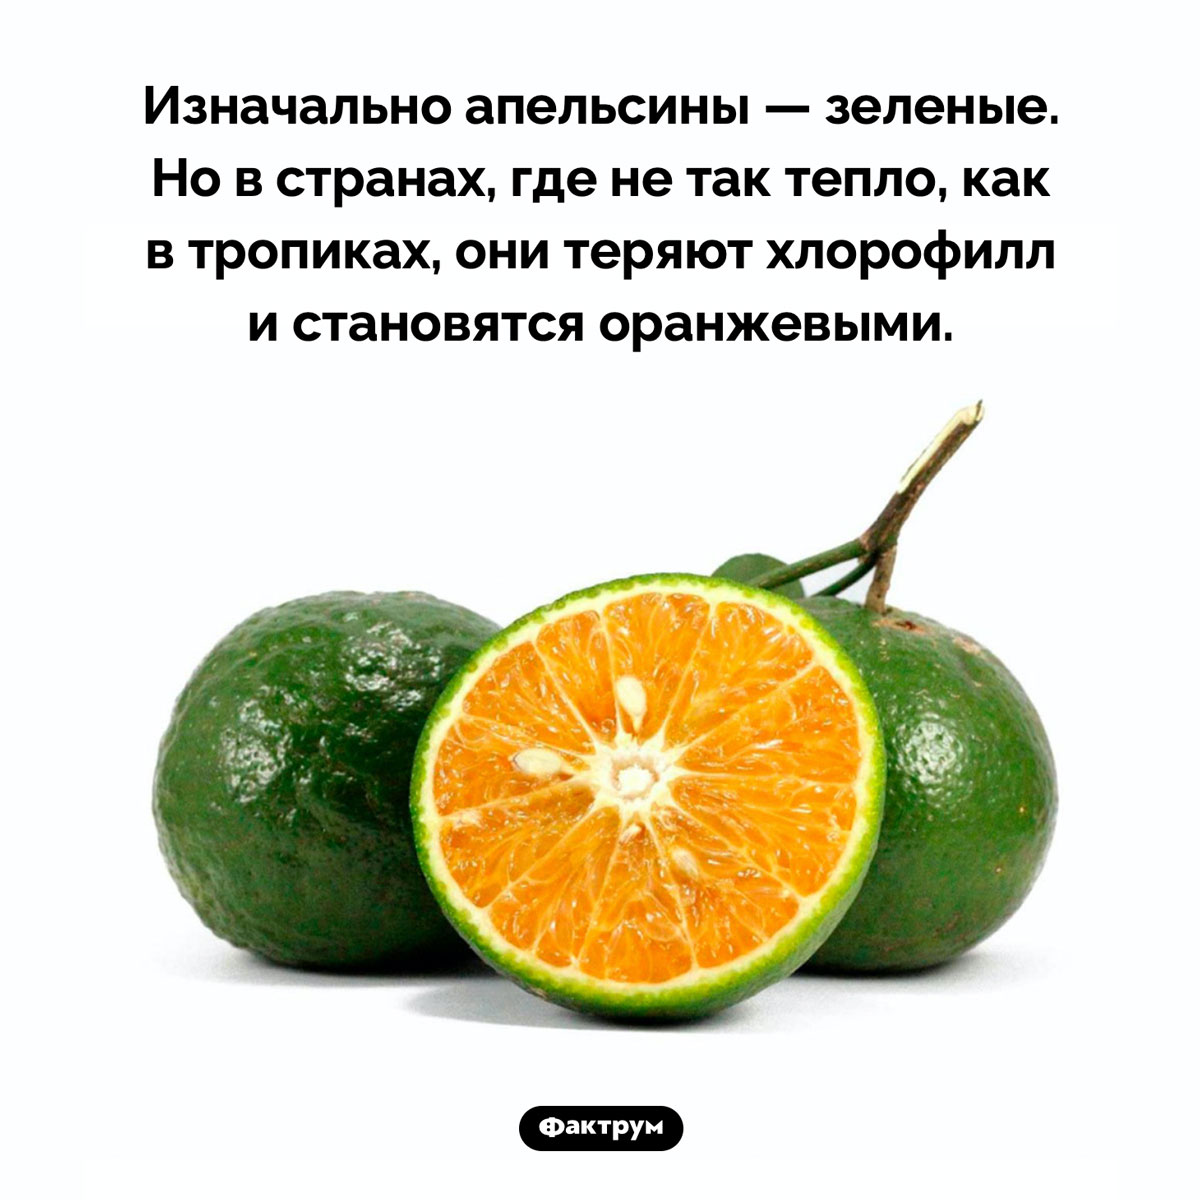 Оригинальный цвет апельсинов. Изначально апельсины — зеленые. Но в странах, где не так тепло, как в тропиках, они теряют хлорофилл и становятся оранжевыми.